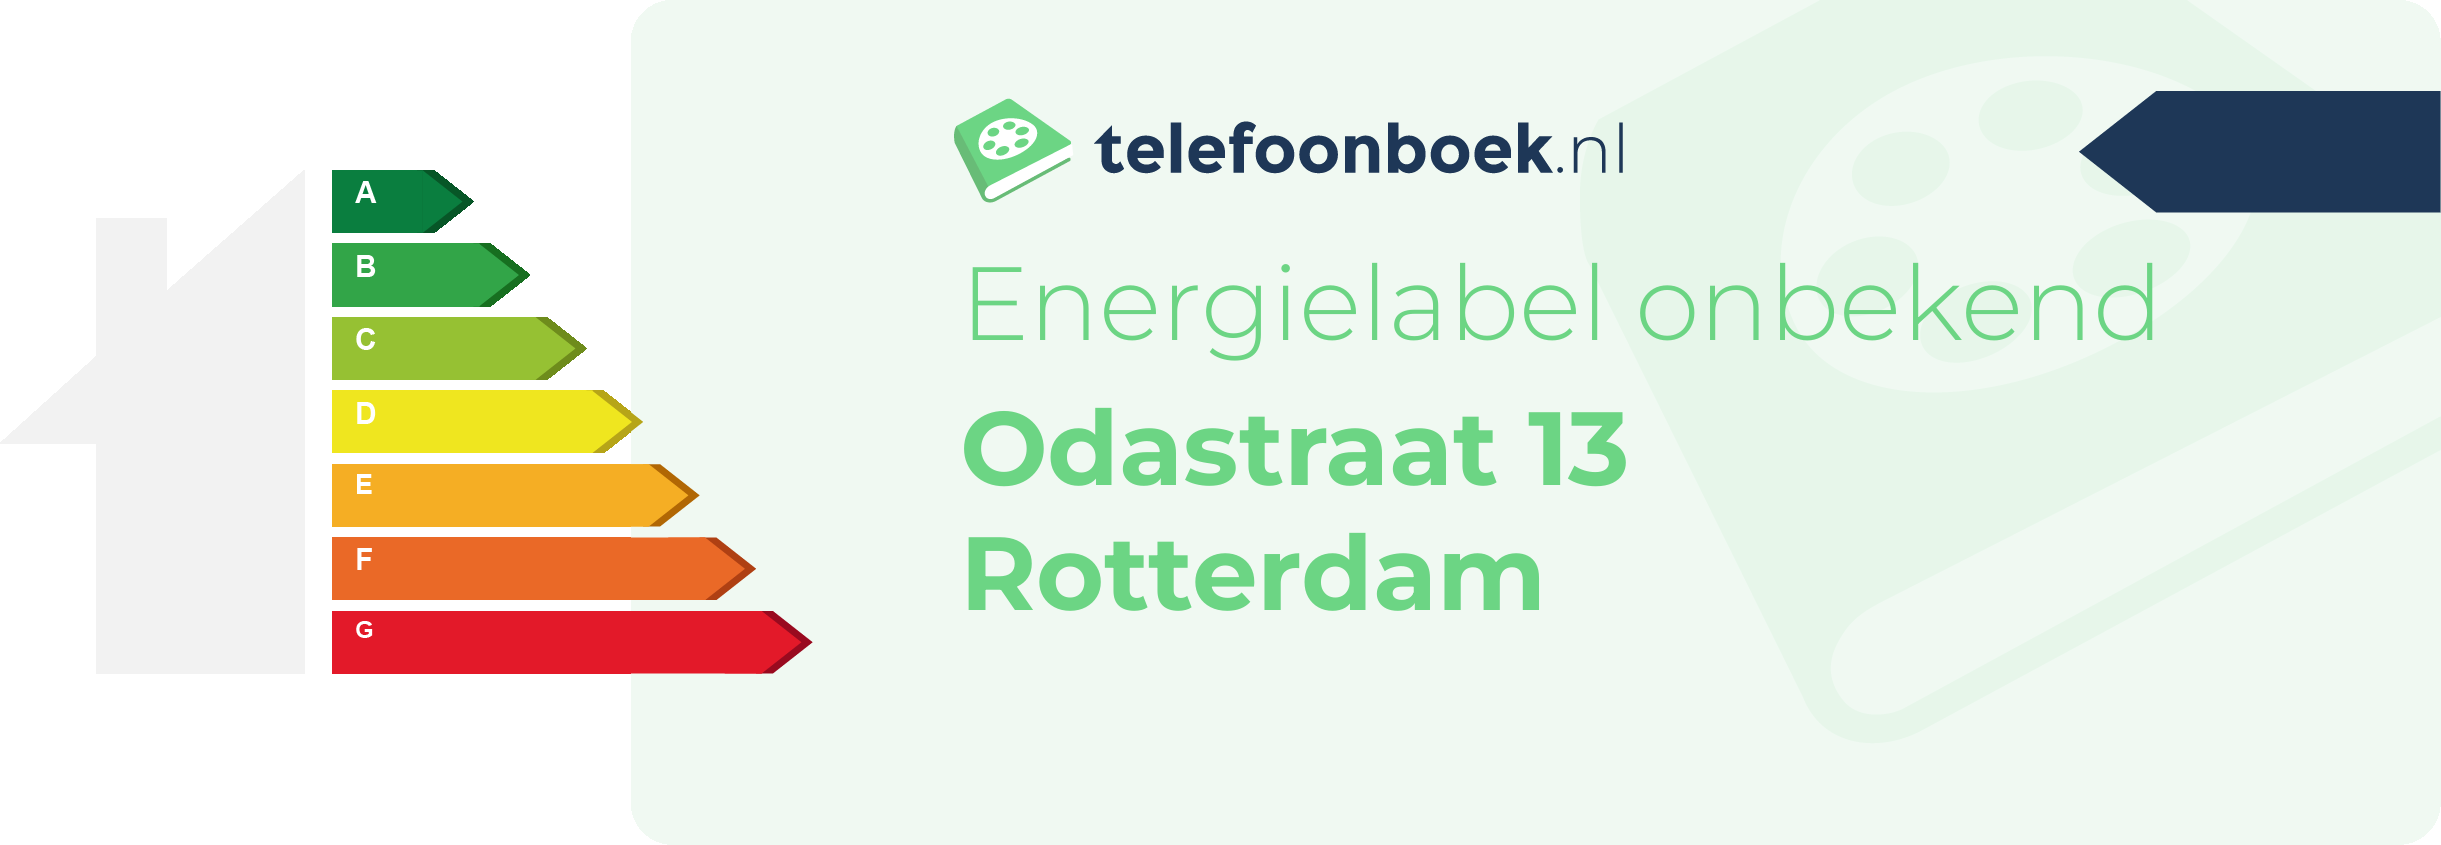 Energielabel Odastraat 13 Rotterdam